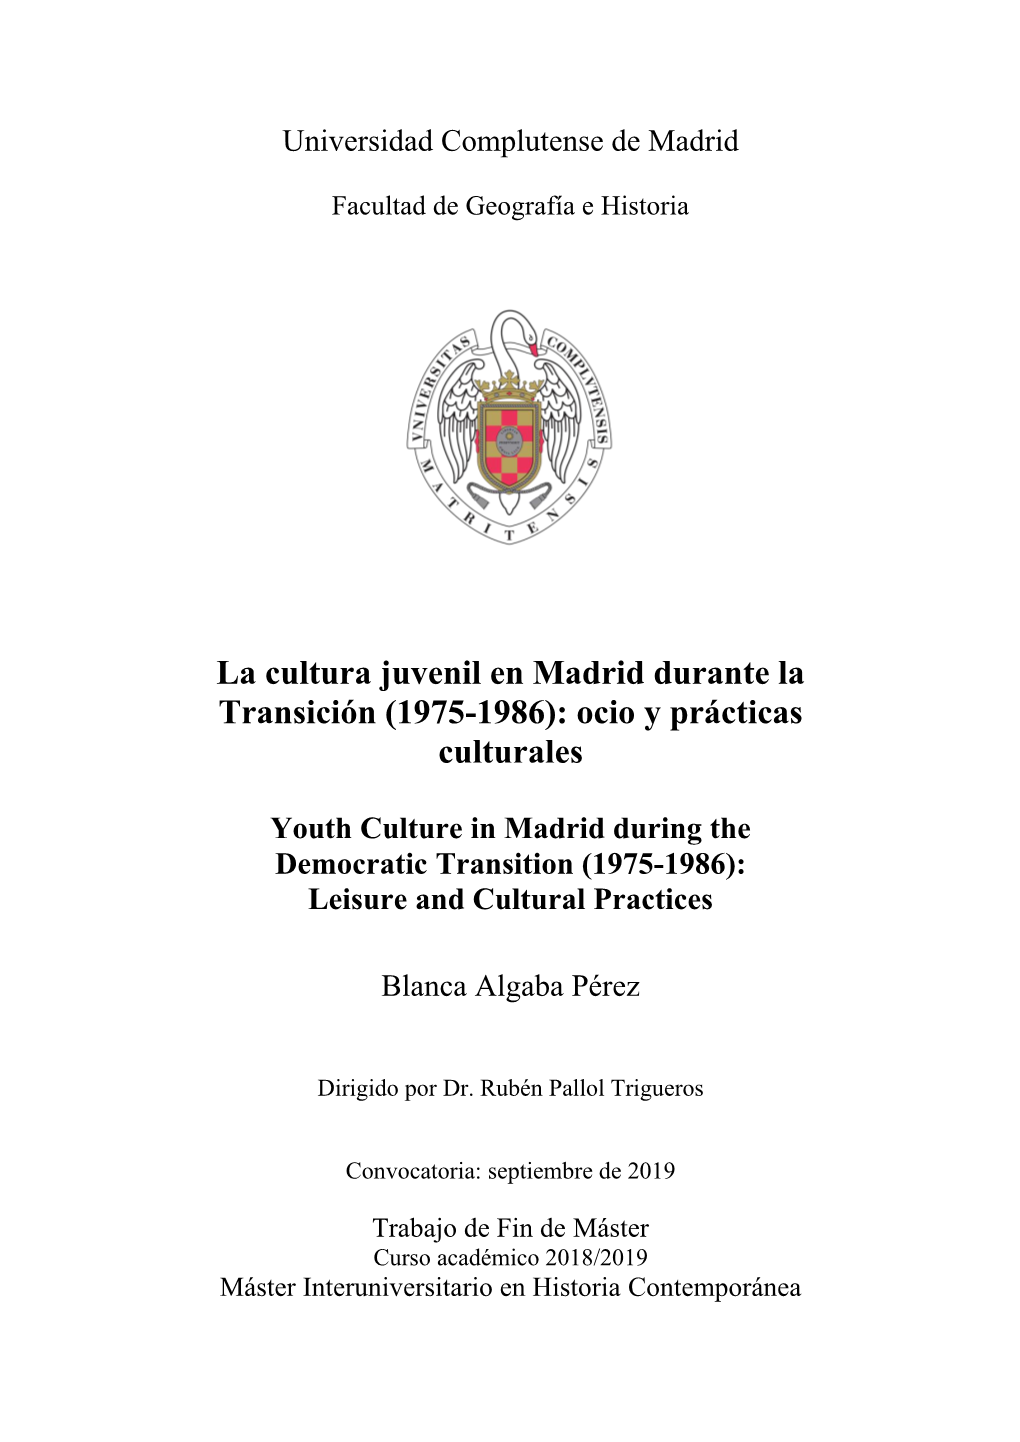 La Cultura Juvenil En Madrid Durante La Transición (1975-1986): Ocio Y Prácticas Culturales